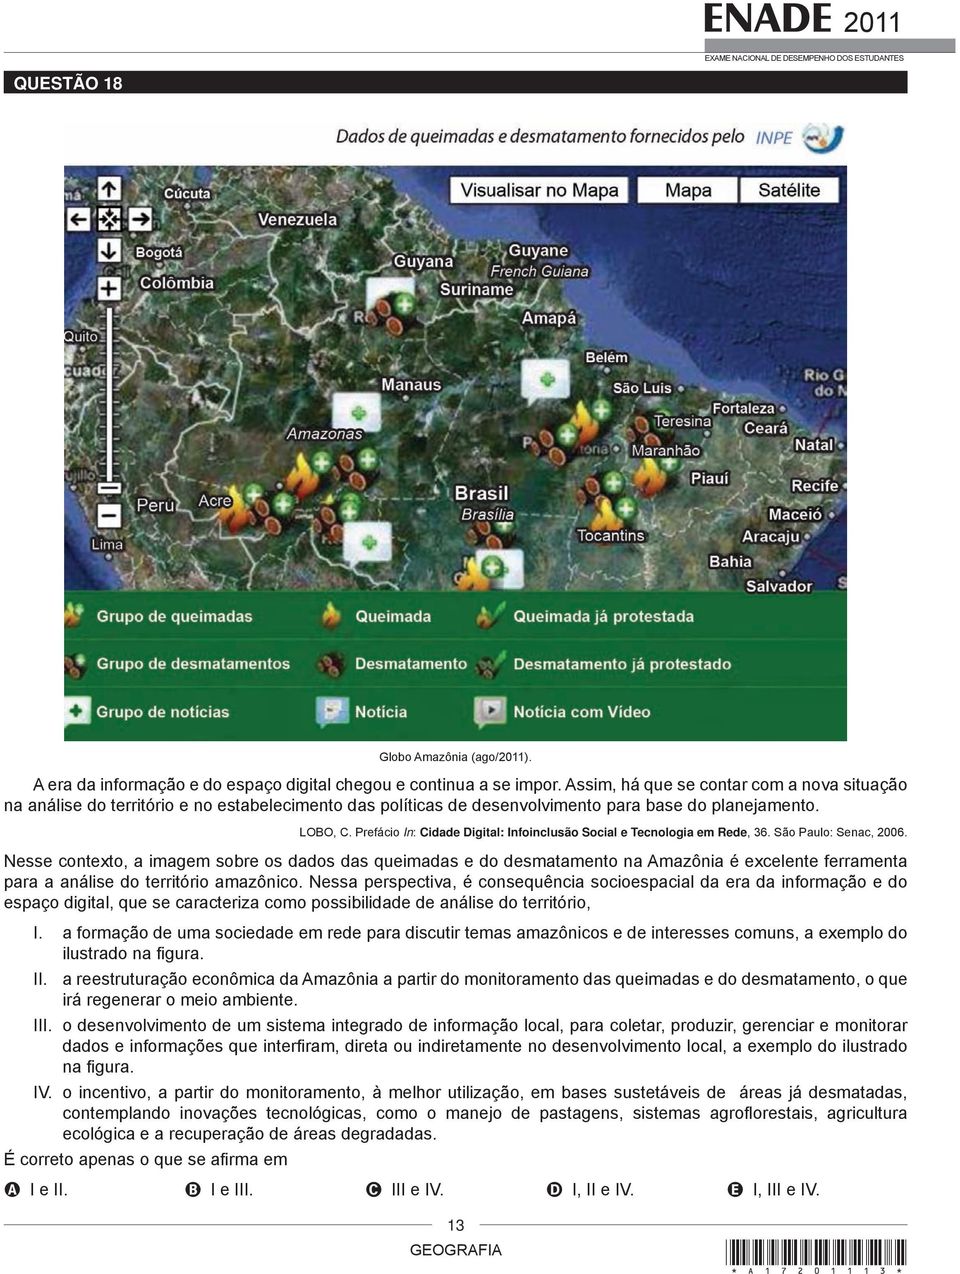 Prefácio In: Cidade Digital: Infoinclusão Social e Tecnologia em Rede, 36. São Paulo: Senac, 2006.